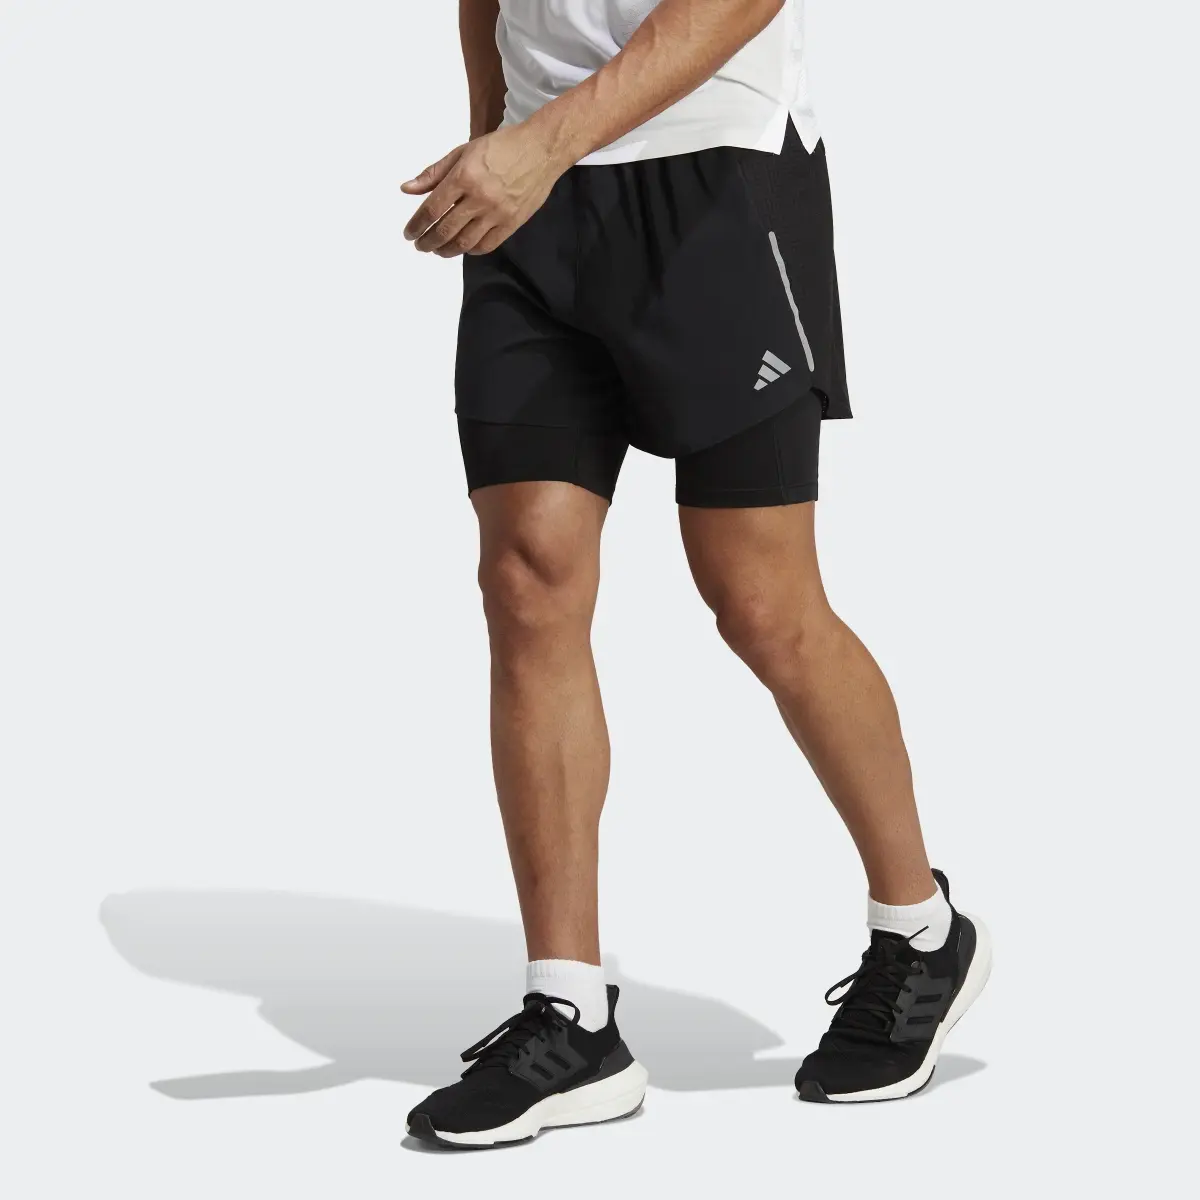 Adidas Shorts Designed 4 Running 2-en-1. 1